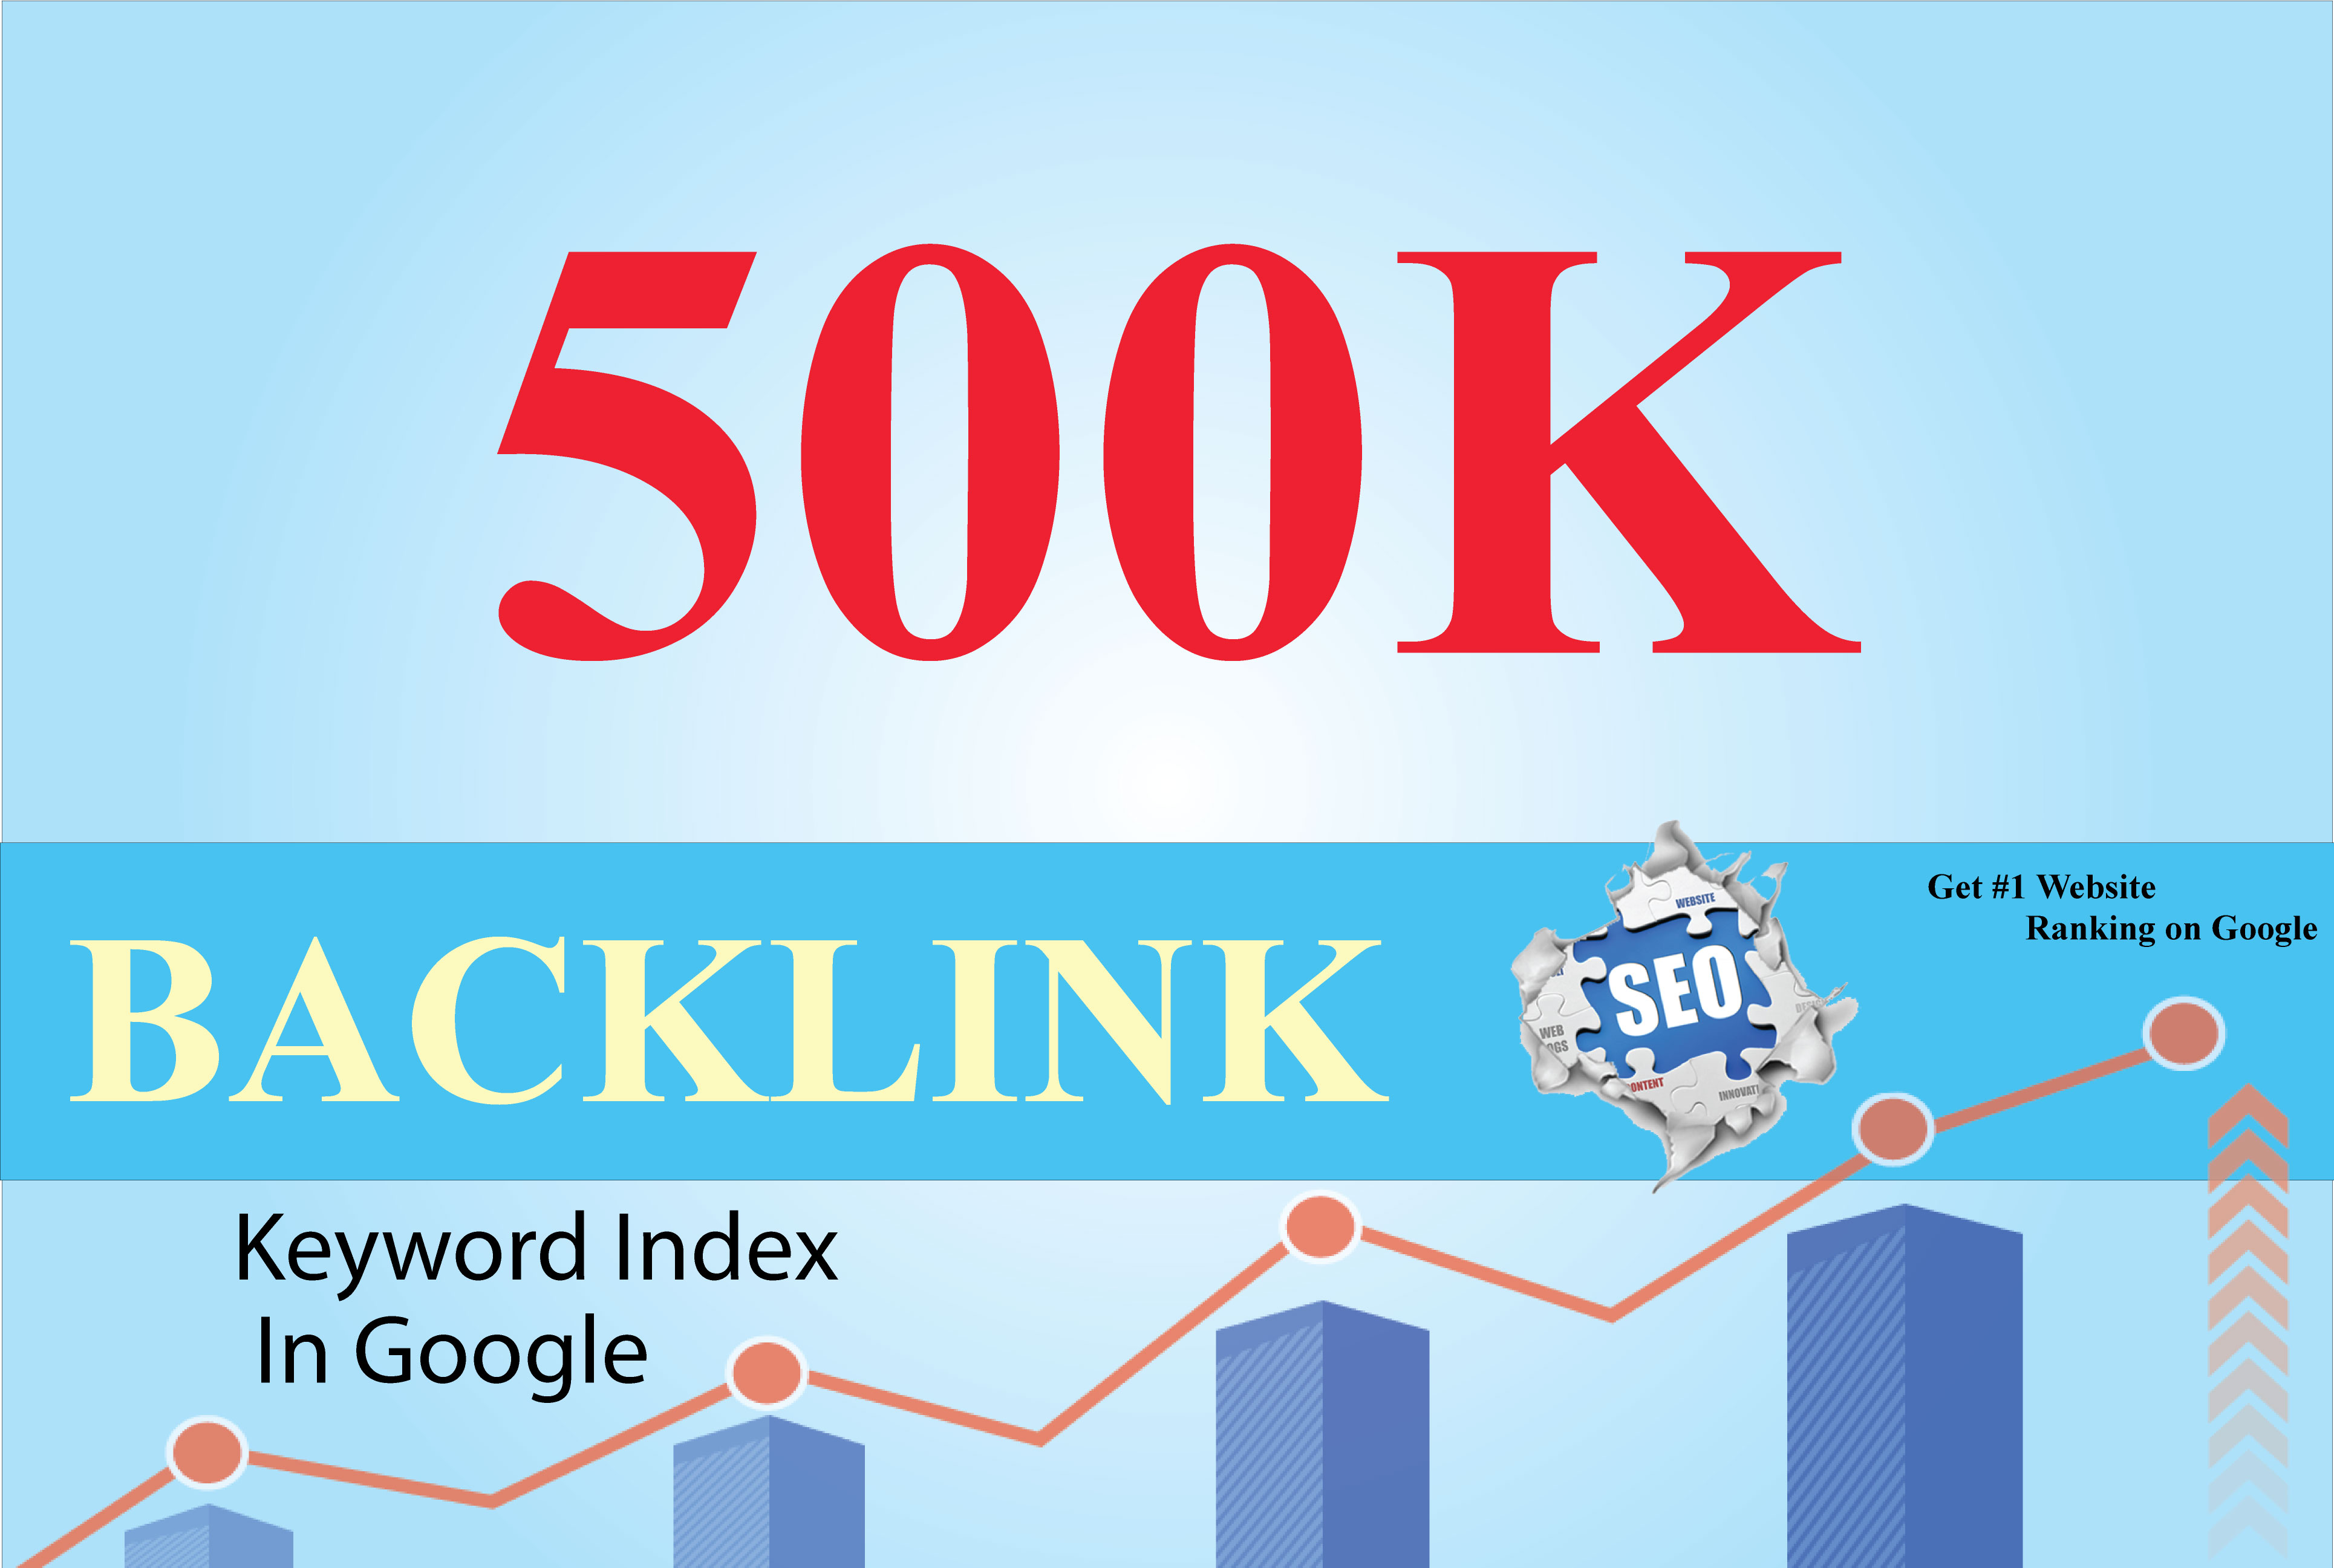 We will provide 500k SEO Backlinks for any website